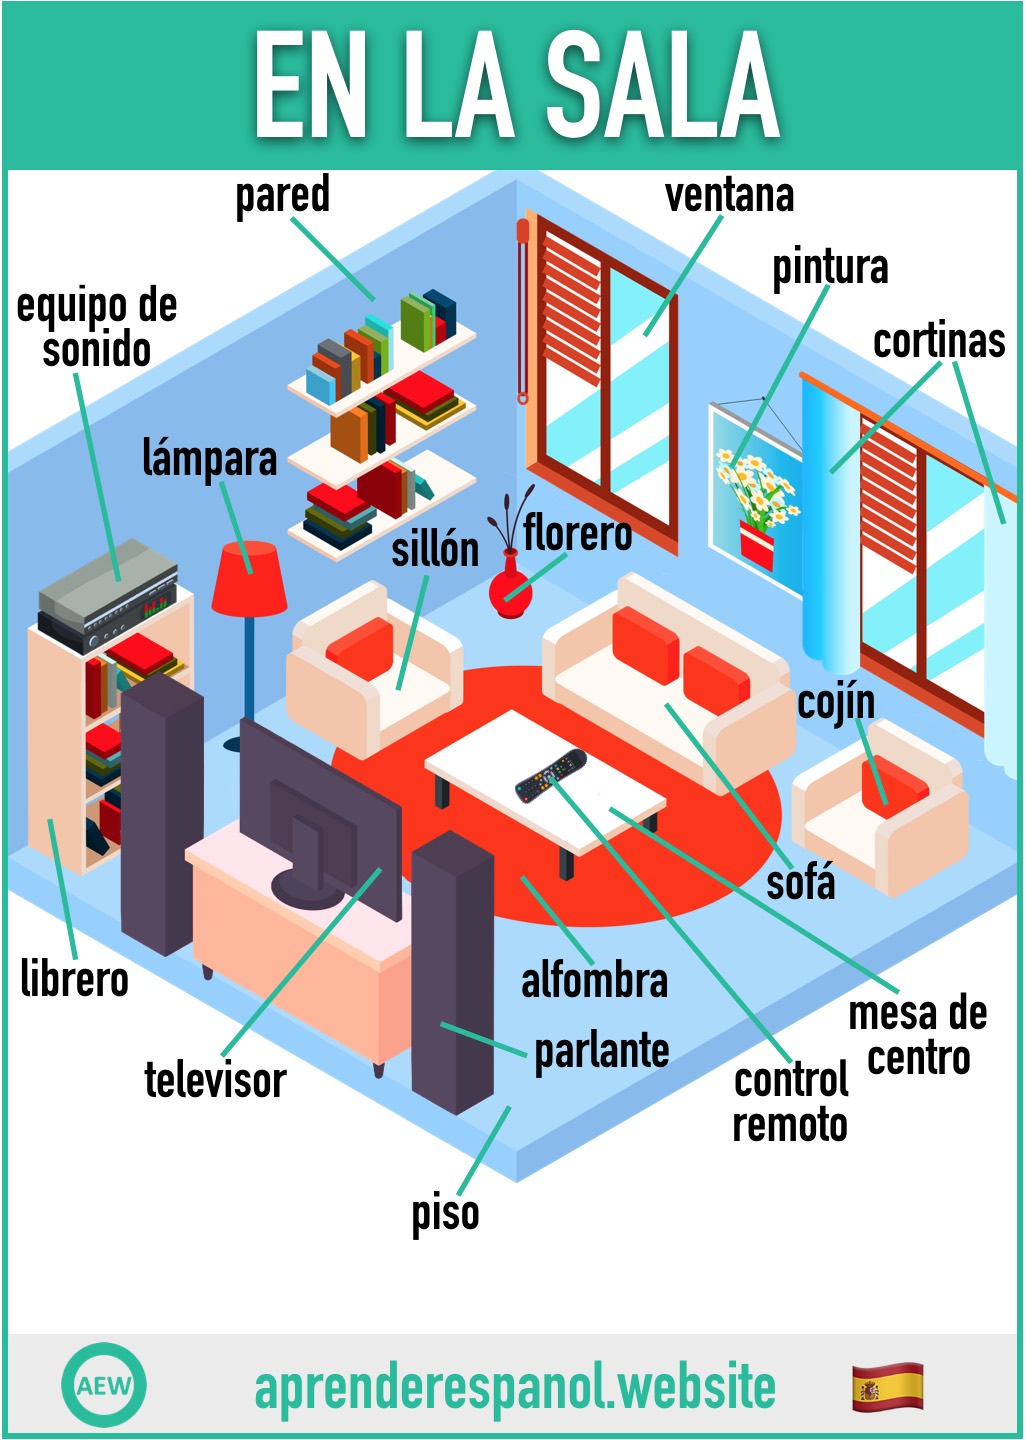 en la sala en español - vocabulario de los objetos en la sala en español - aprender español website